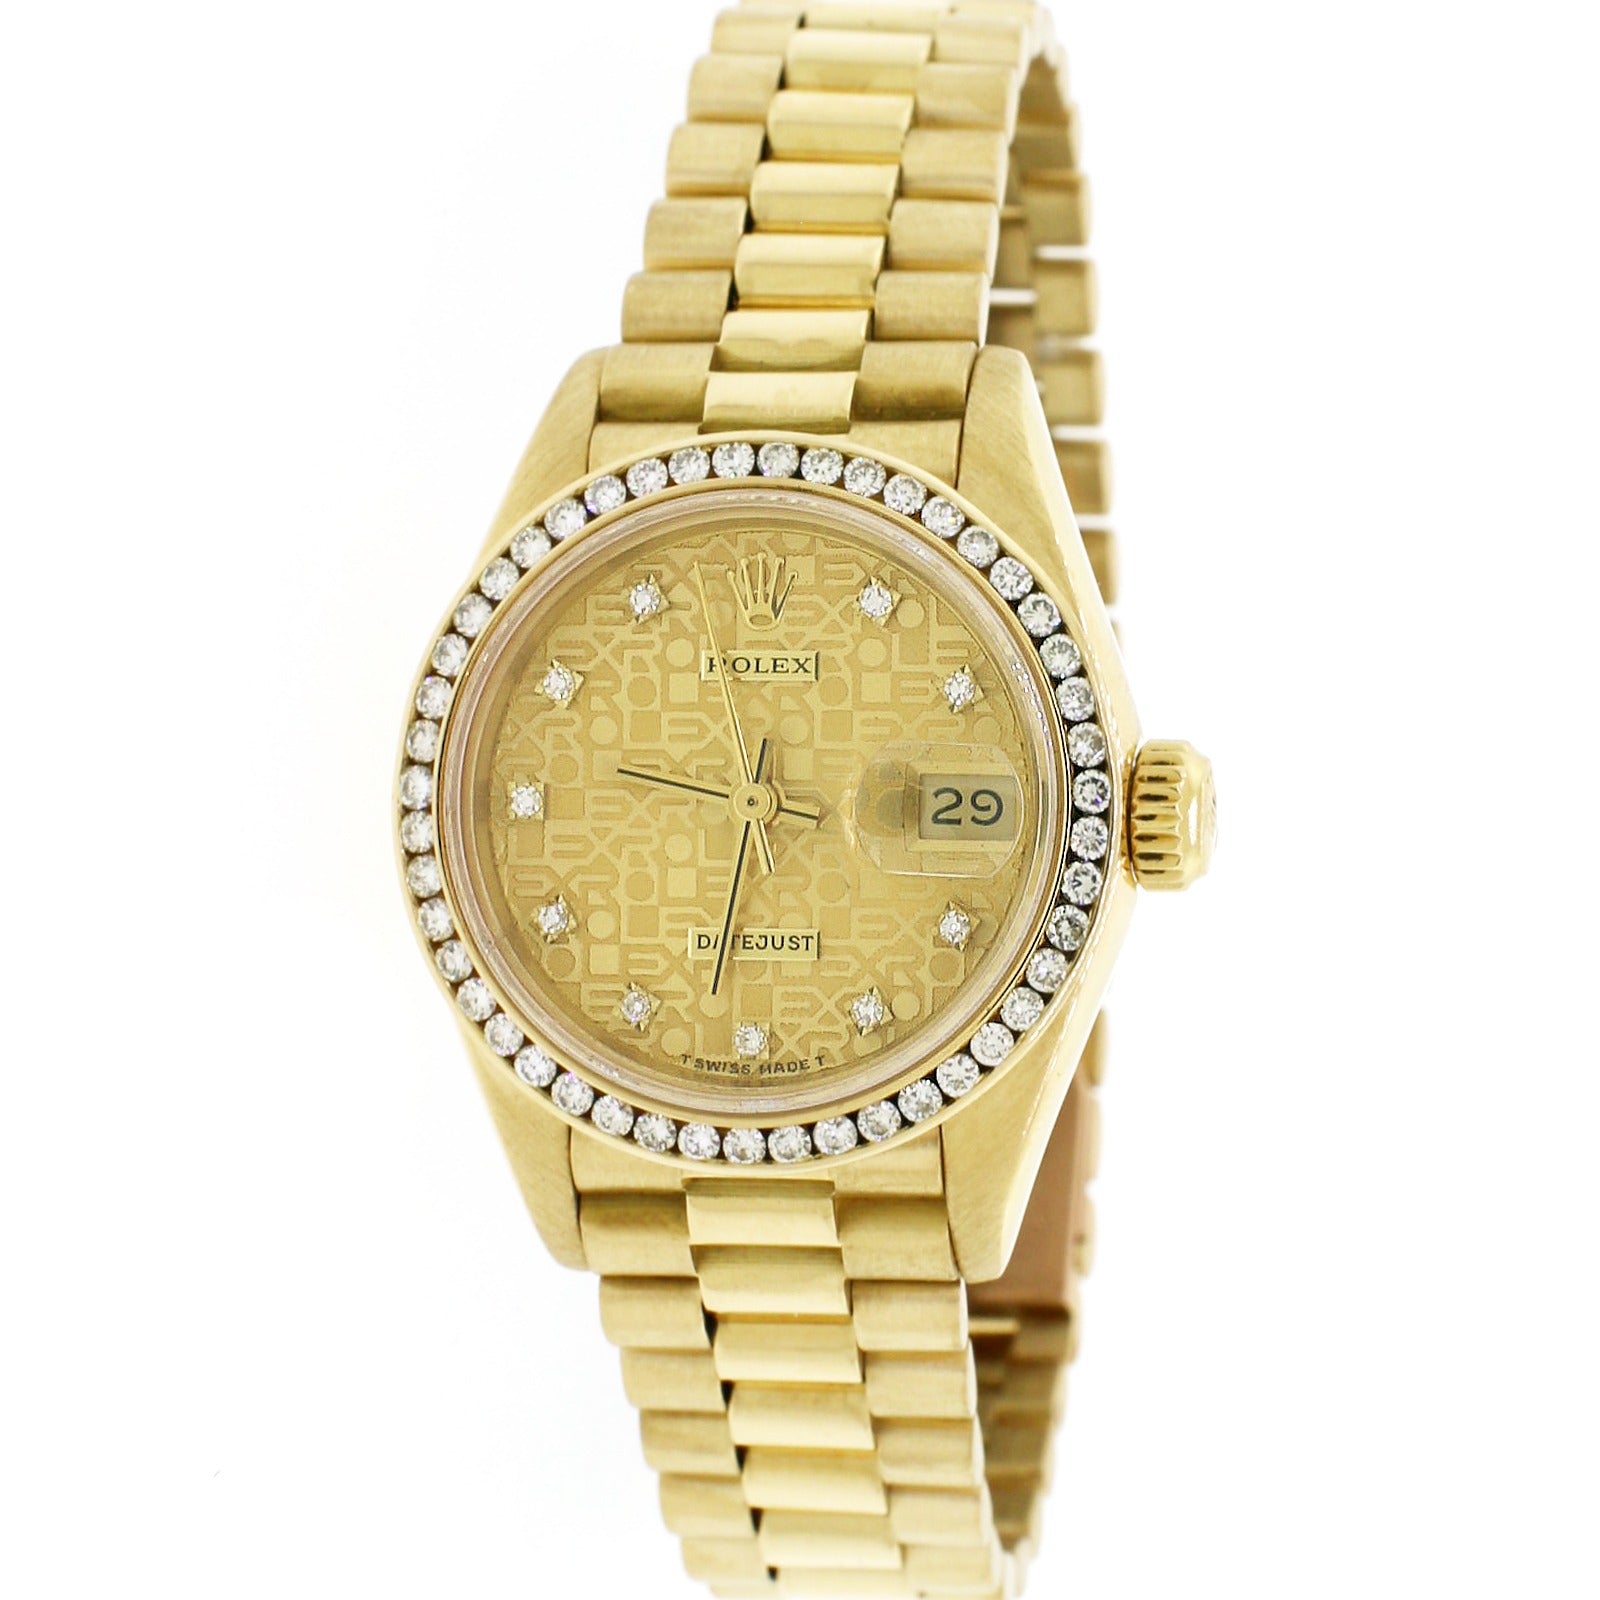 Rolex Datejust President 18K Gold Watch